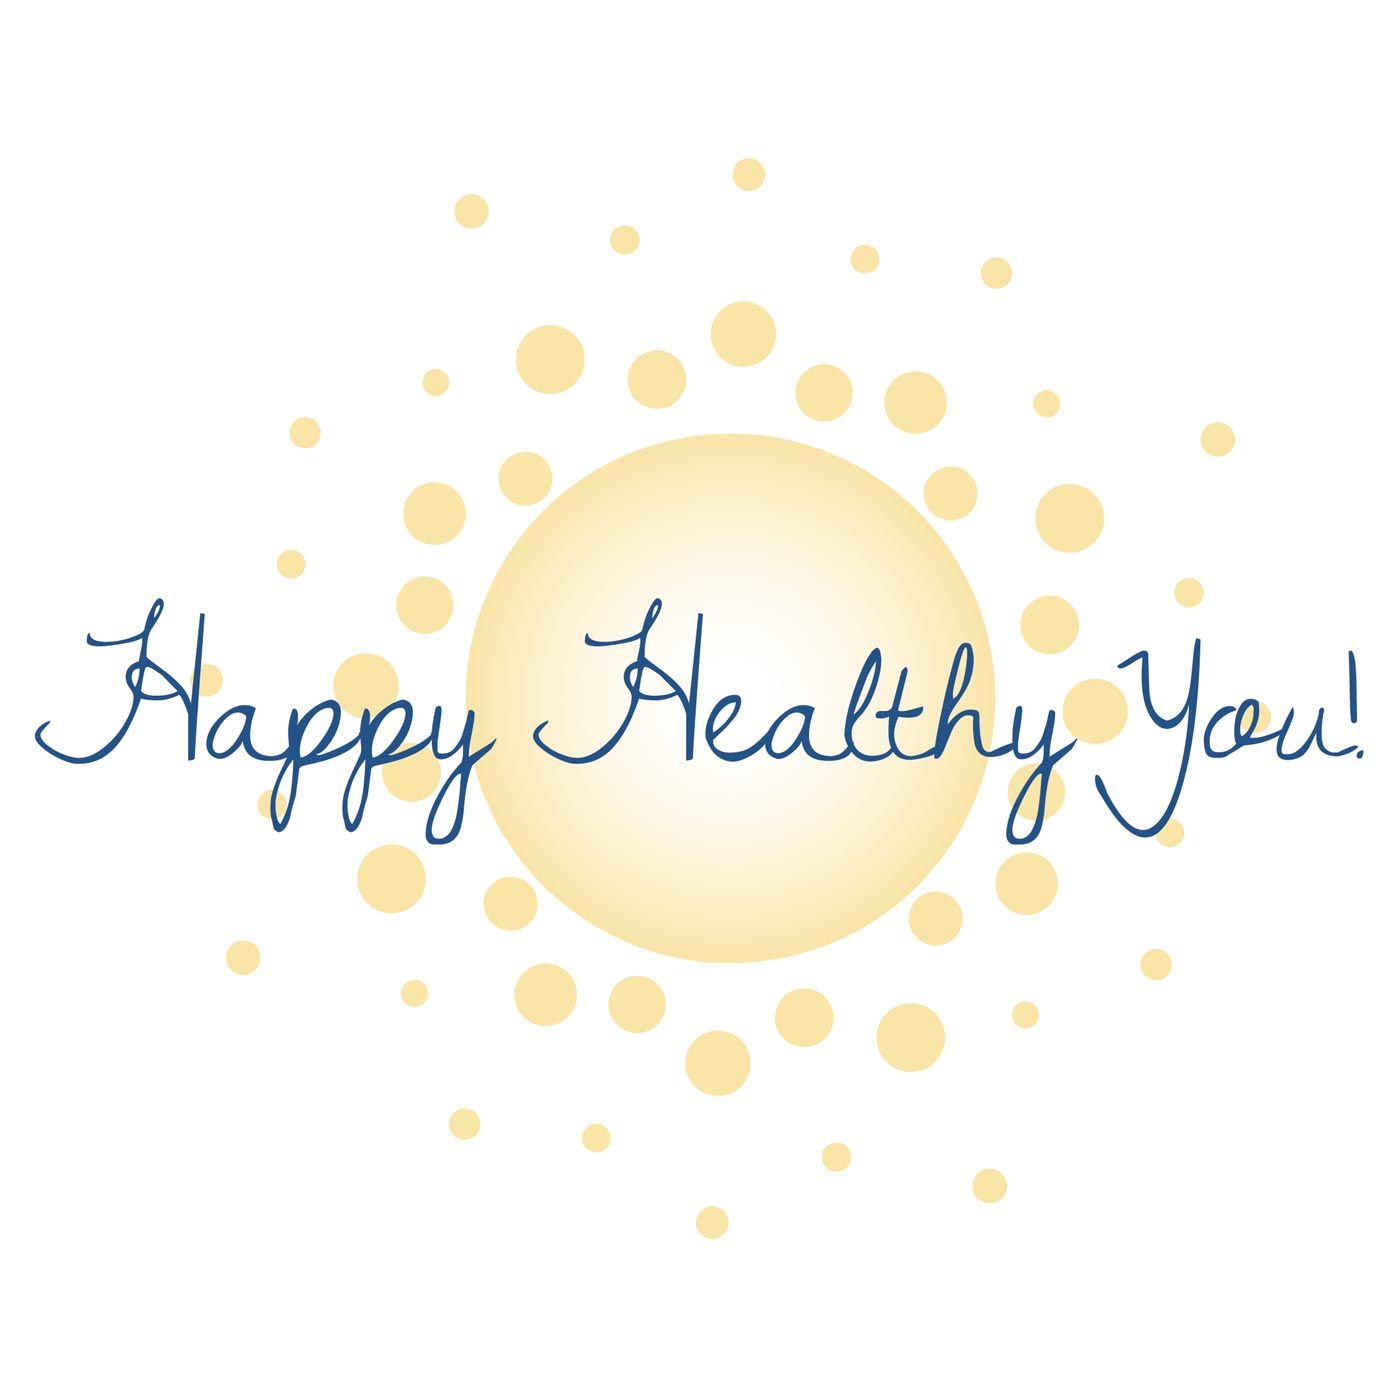 Happy Healthy You!